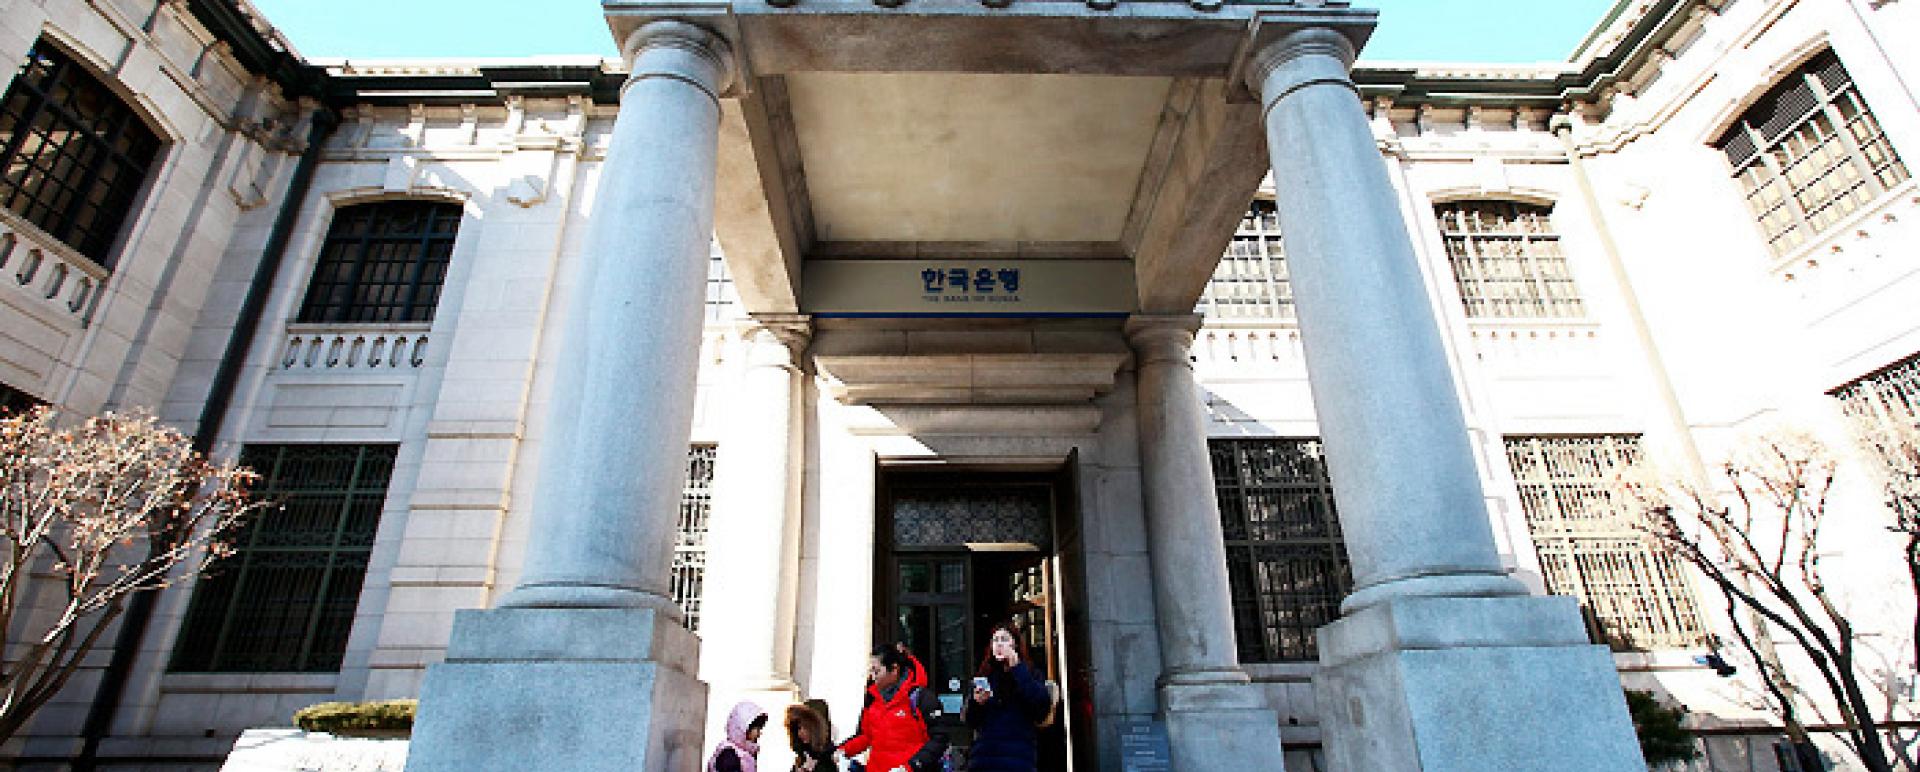 Visitors take a photo outside the Bank of Korea headquarters (Yonhap)